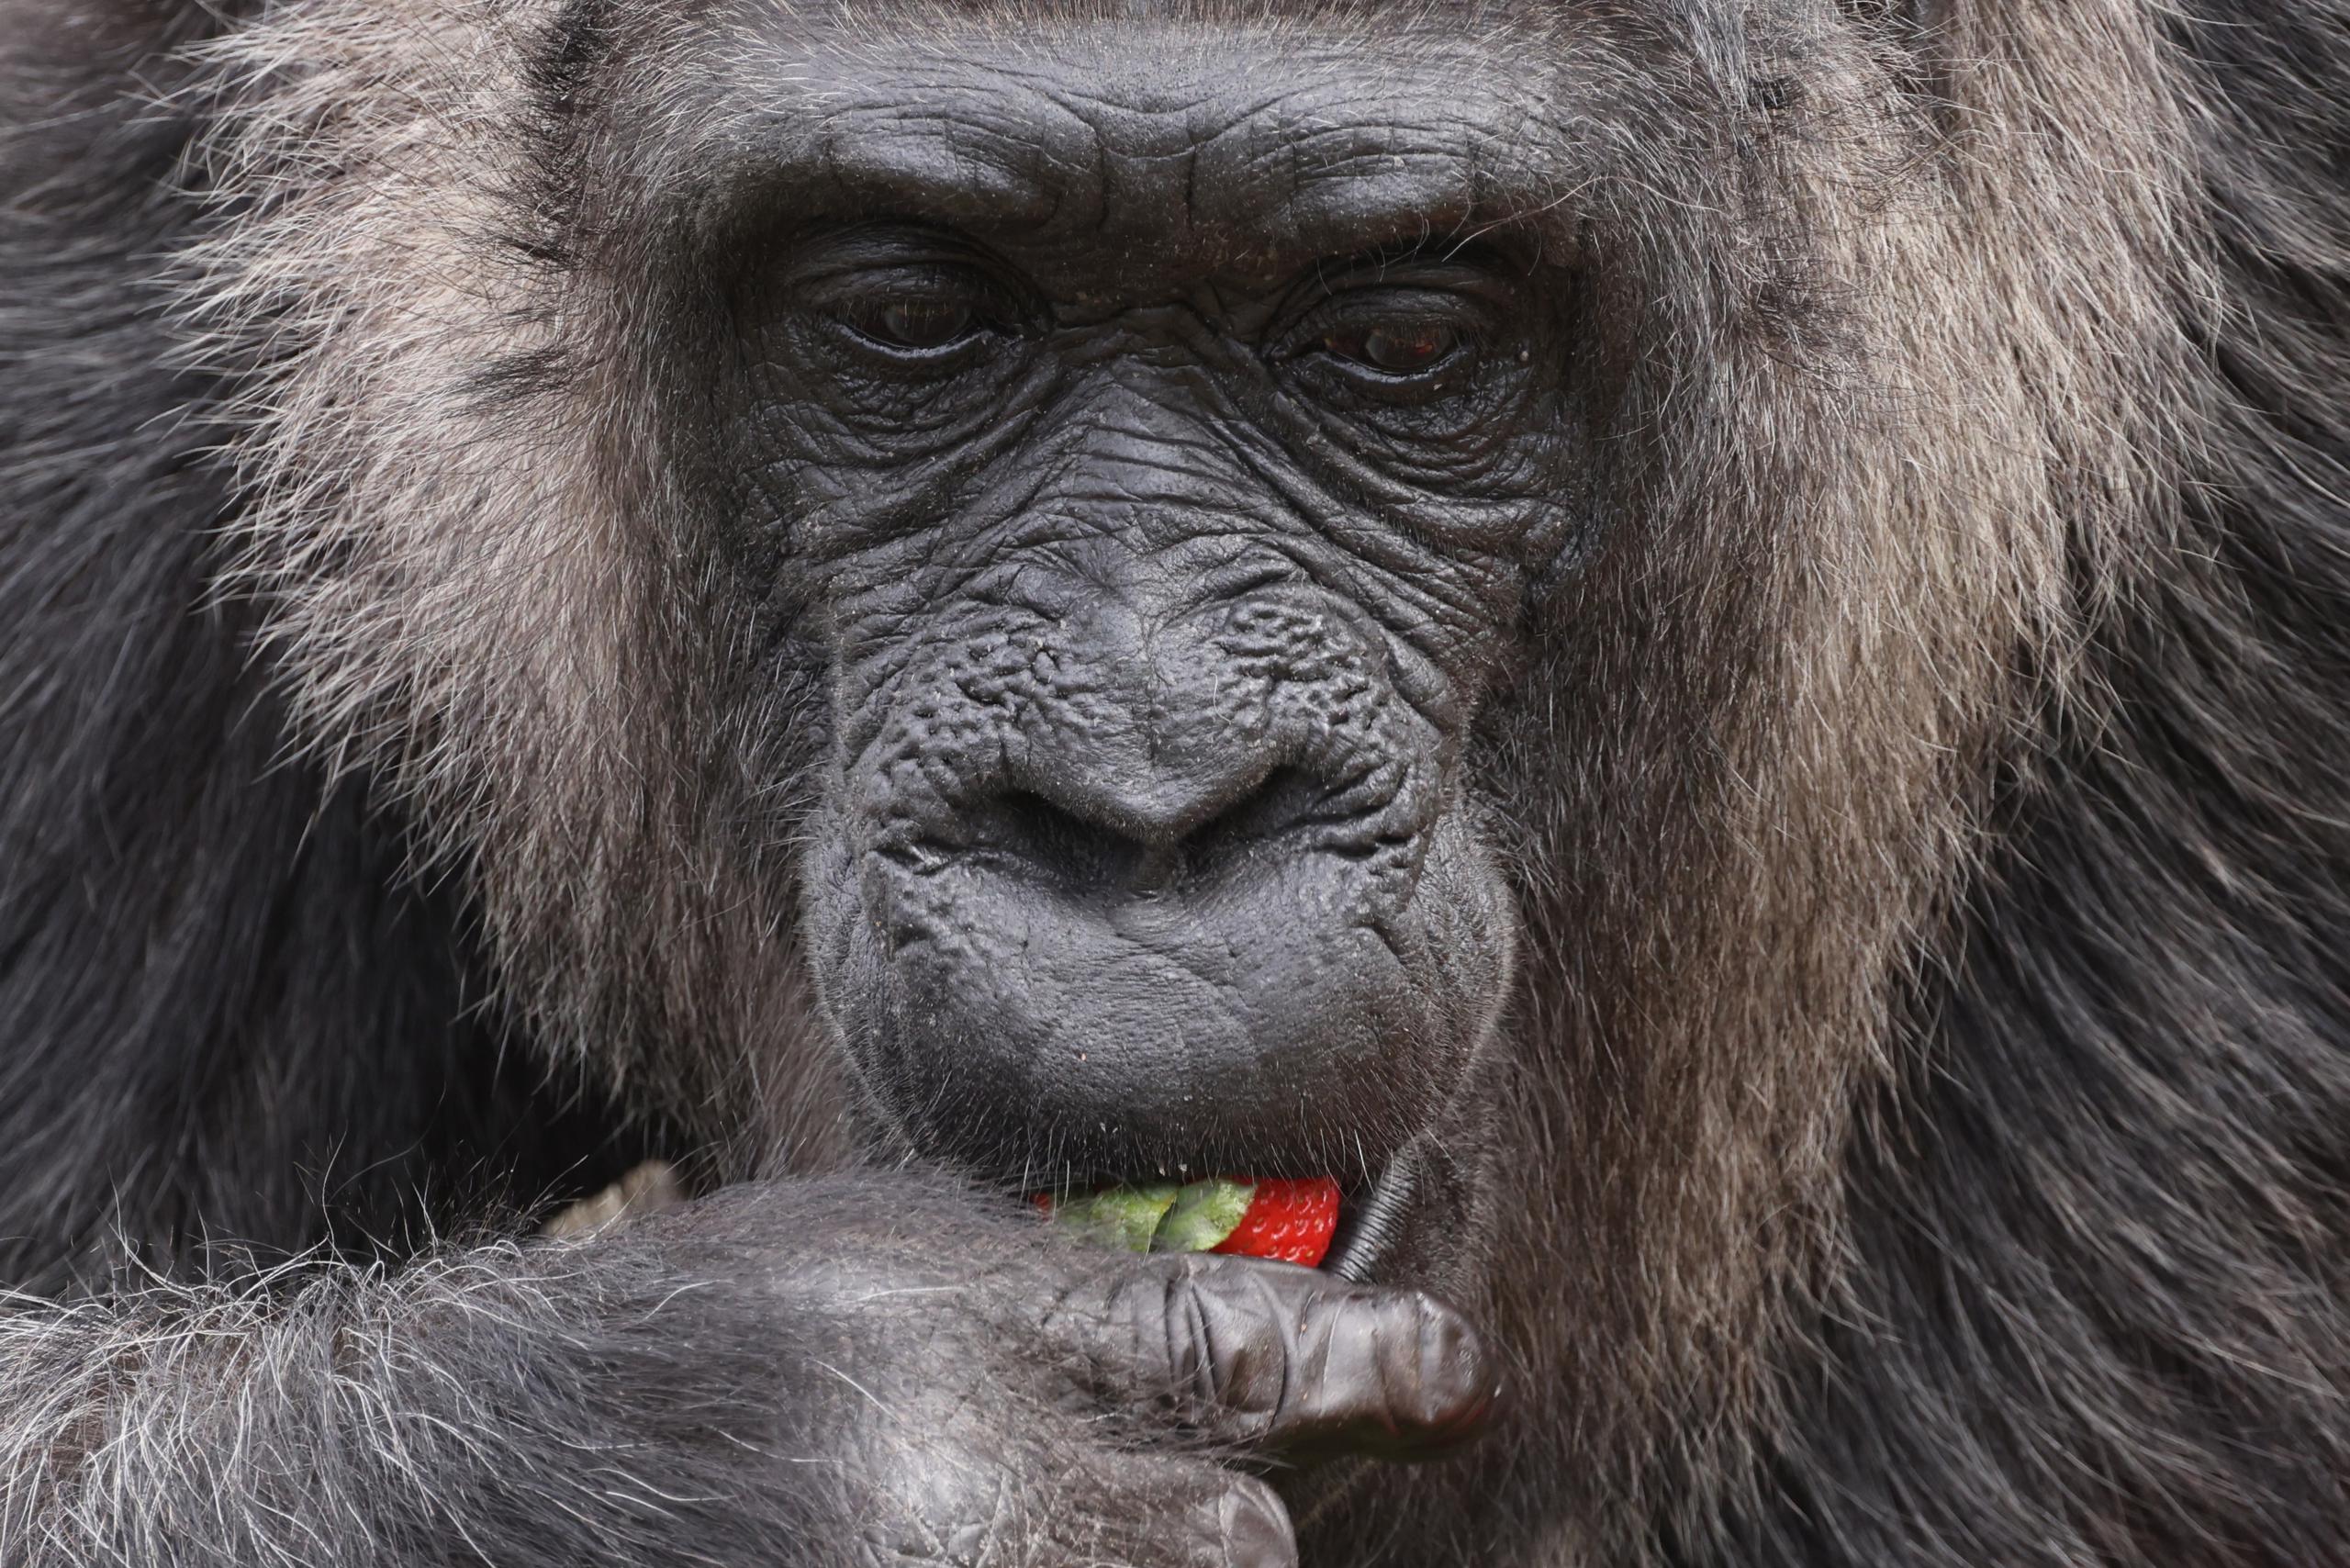 La gorila hembra más antigua conocida en el mundo 'Fatou' come una fresa de una canasta de alimentos en su cumpleaños durante un evento de prensa en el Jardín Zoológico de Berlín, Alemania, este jueves. Fatou ha cumplido 66 años este 13 de abril de 2023. (EFE/CLEMENS BILAN)